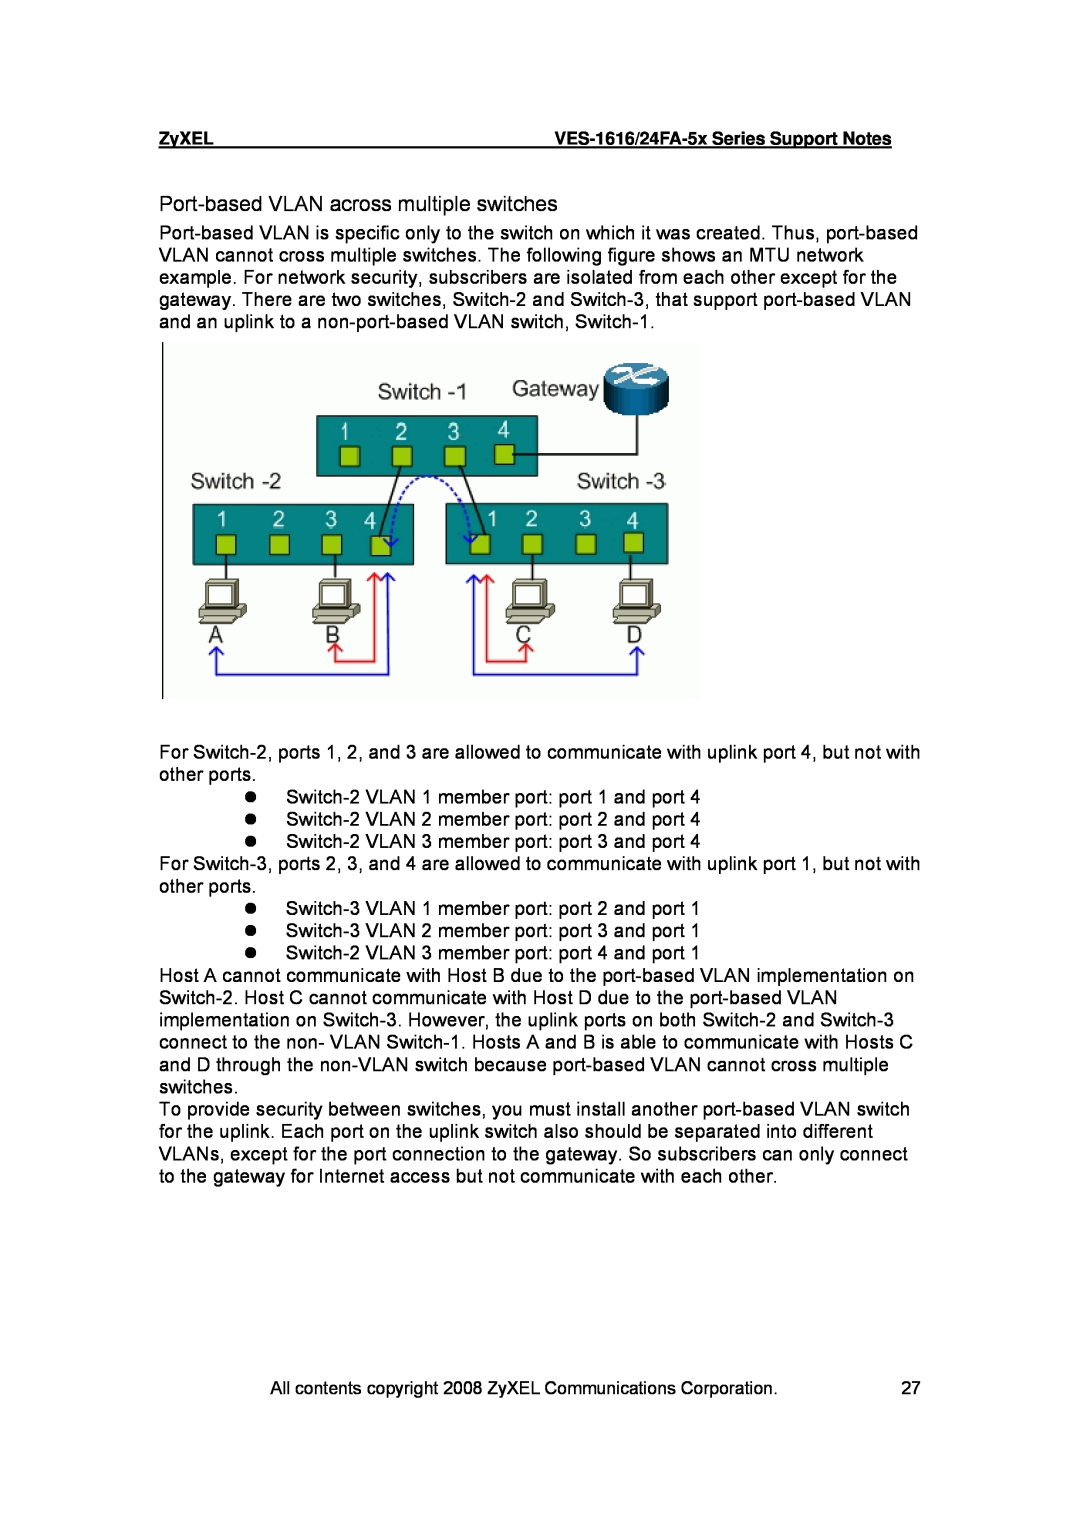 ZyXEL Communications VES-1616 manual z Switch-2 VLAN 1 member port port 1 and port 